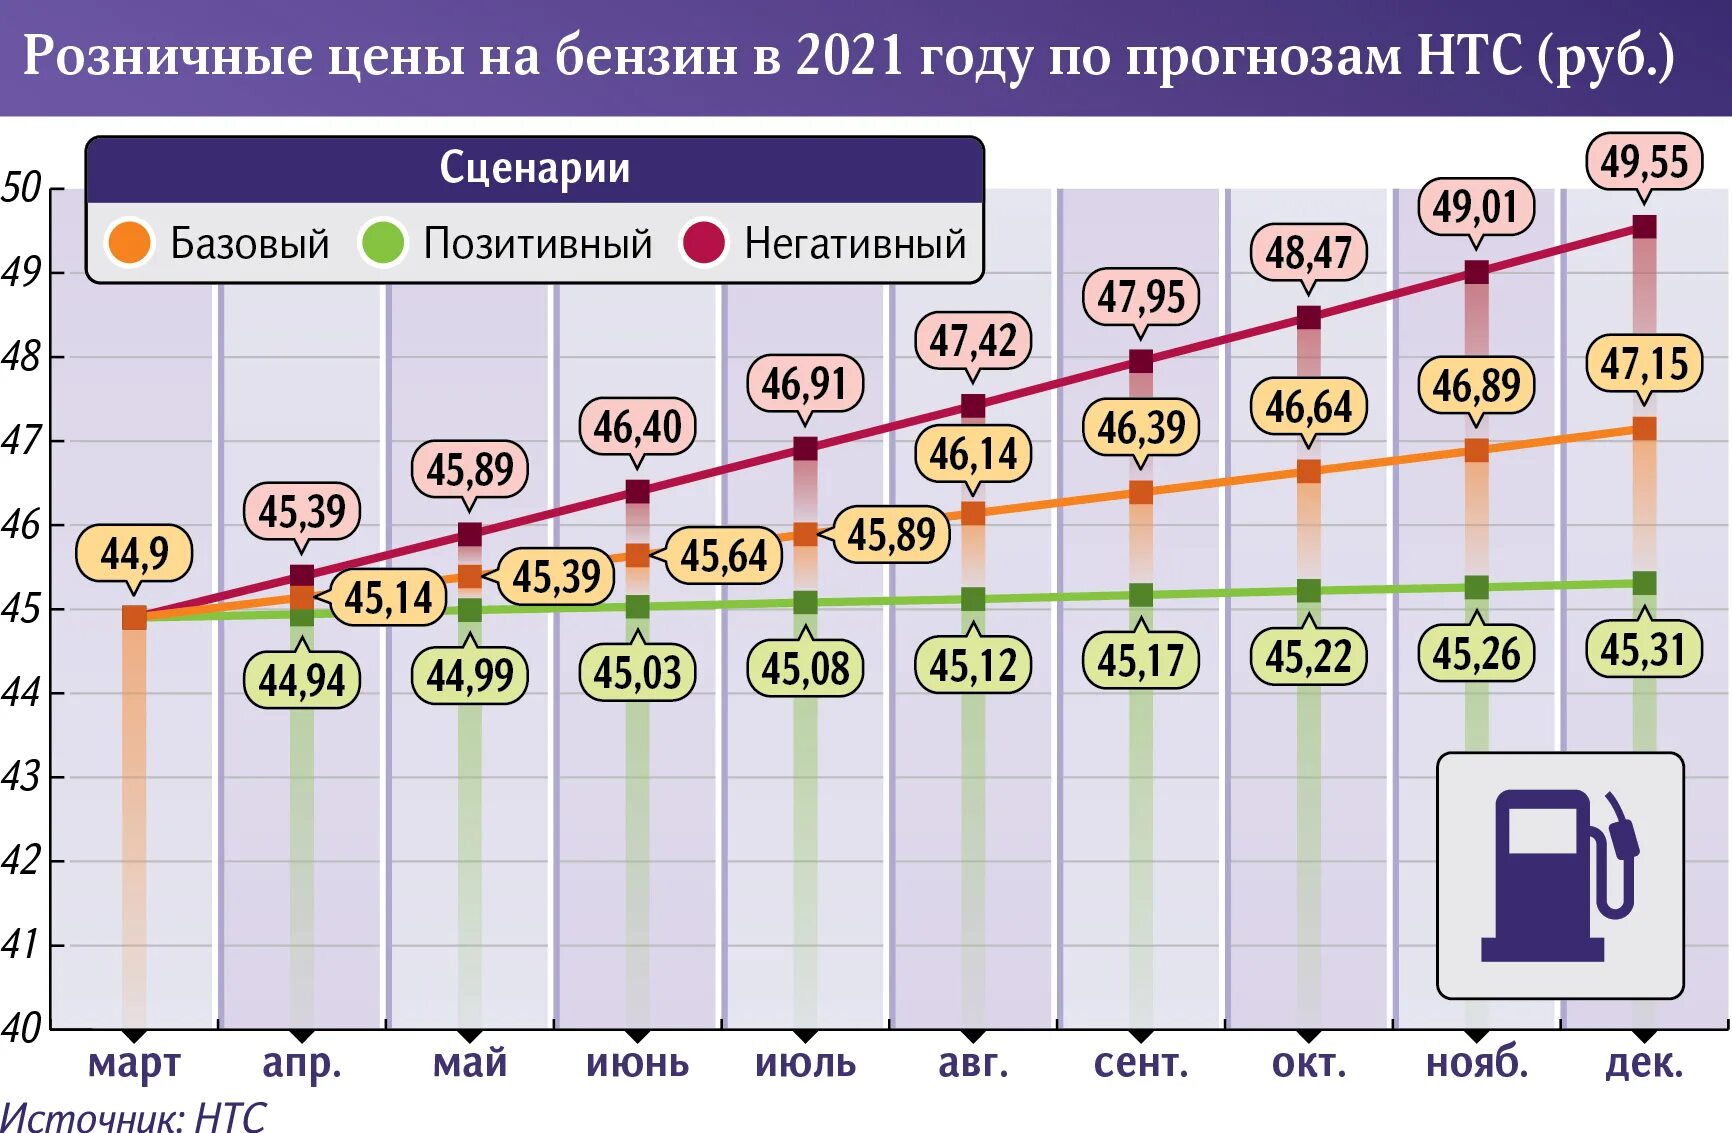 Динамика акцизов на бензин. Расценки бензина на 2021 год. Рост стоимости солярки по годам 2021. Рост бензина 2021.